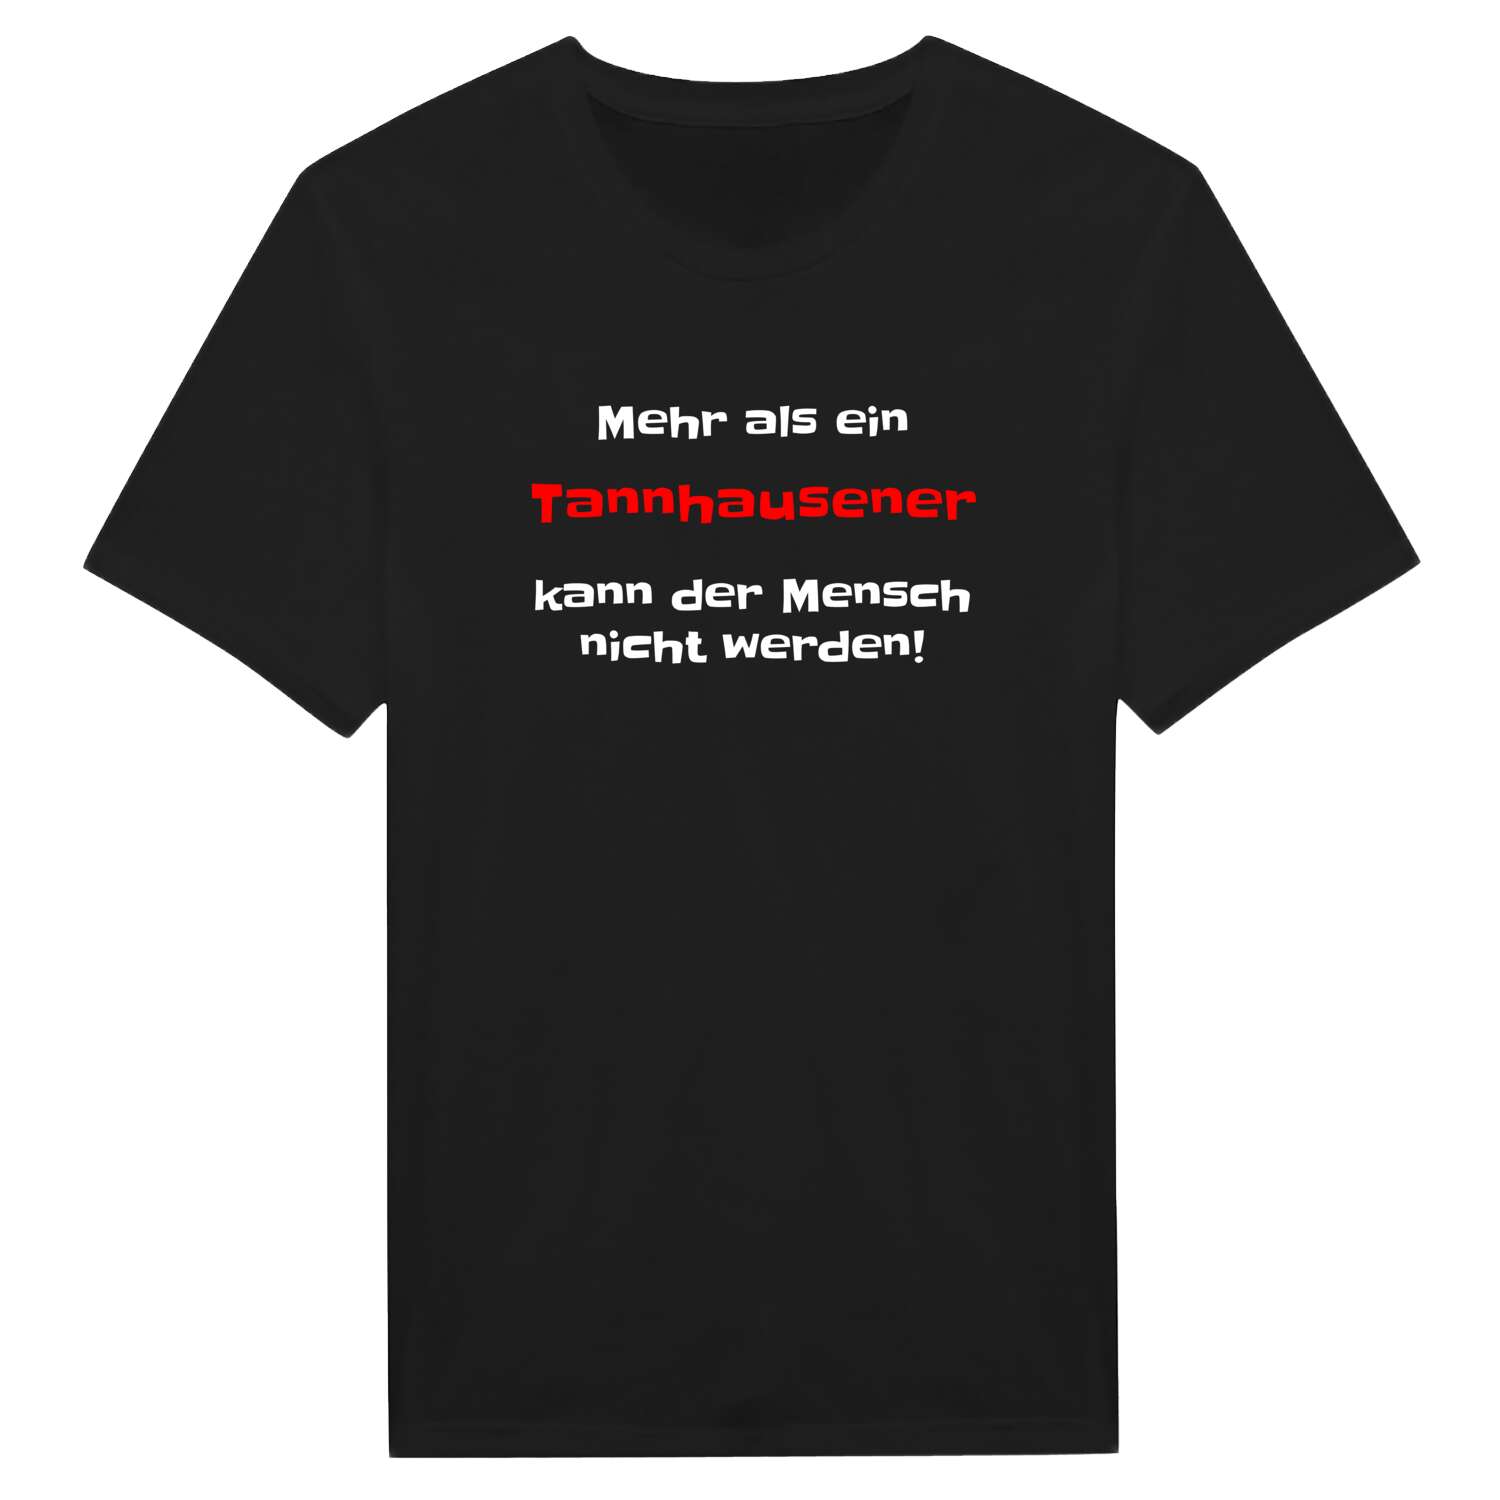 Tannhausen T-Shirt »Mehr als ein«